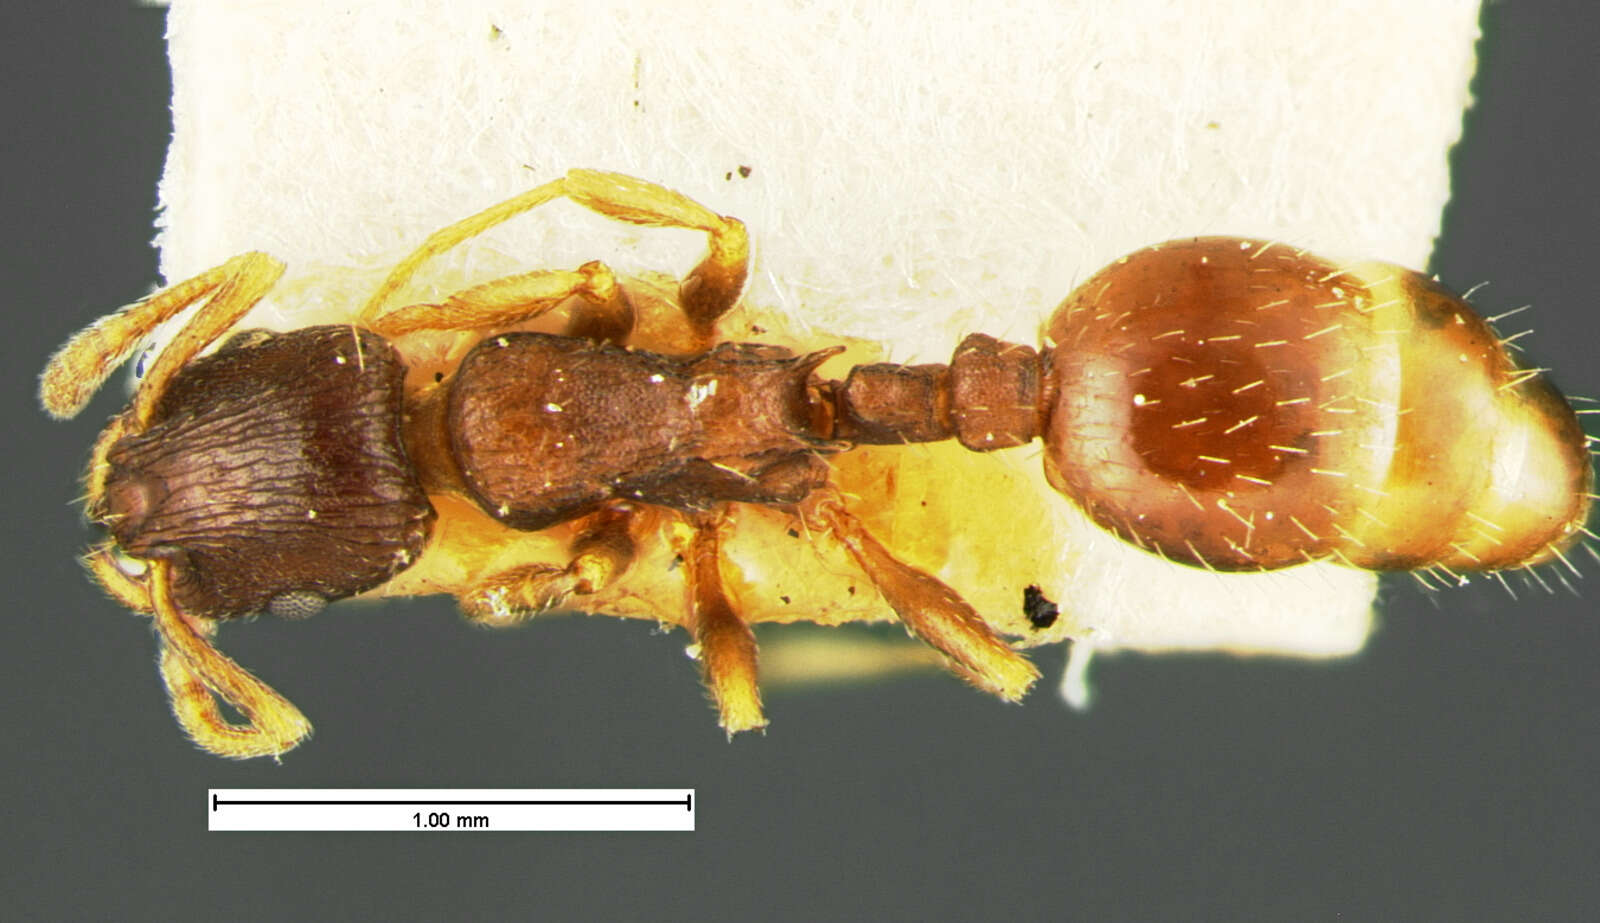 Image of Leptothorax crassipilis Wheeler 1917